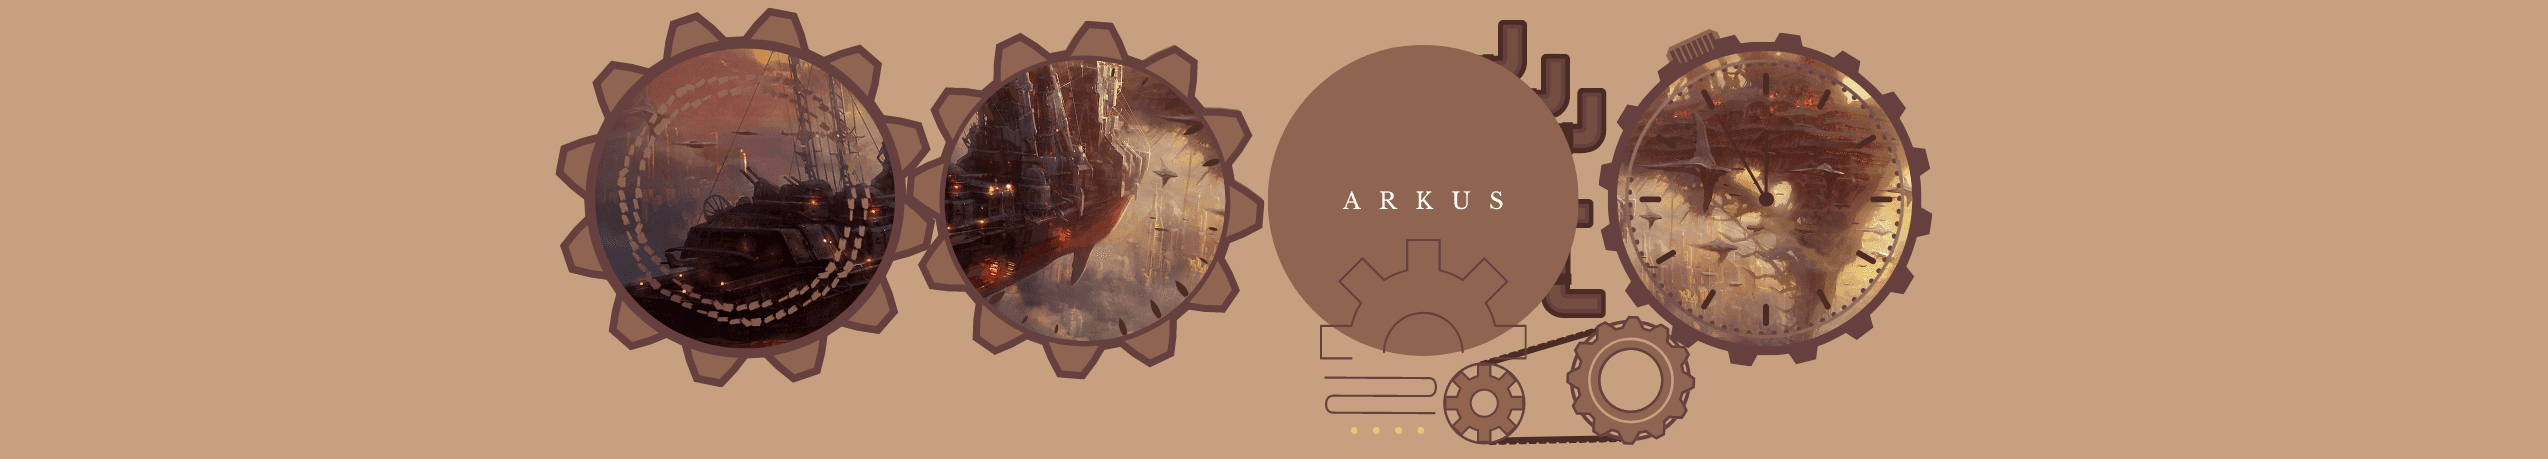 Arkus banner